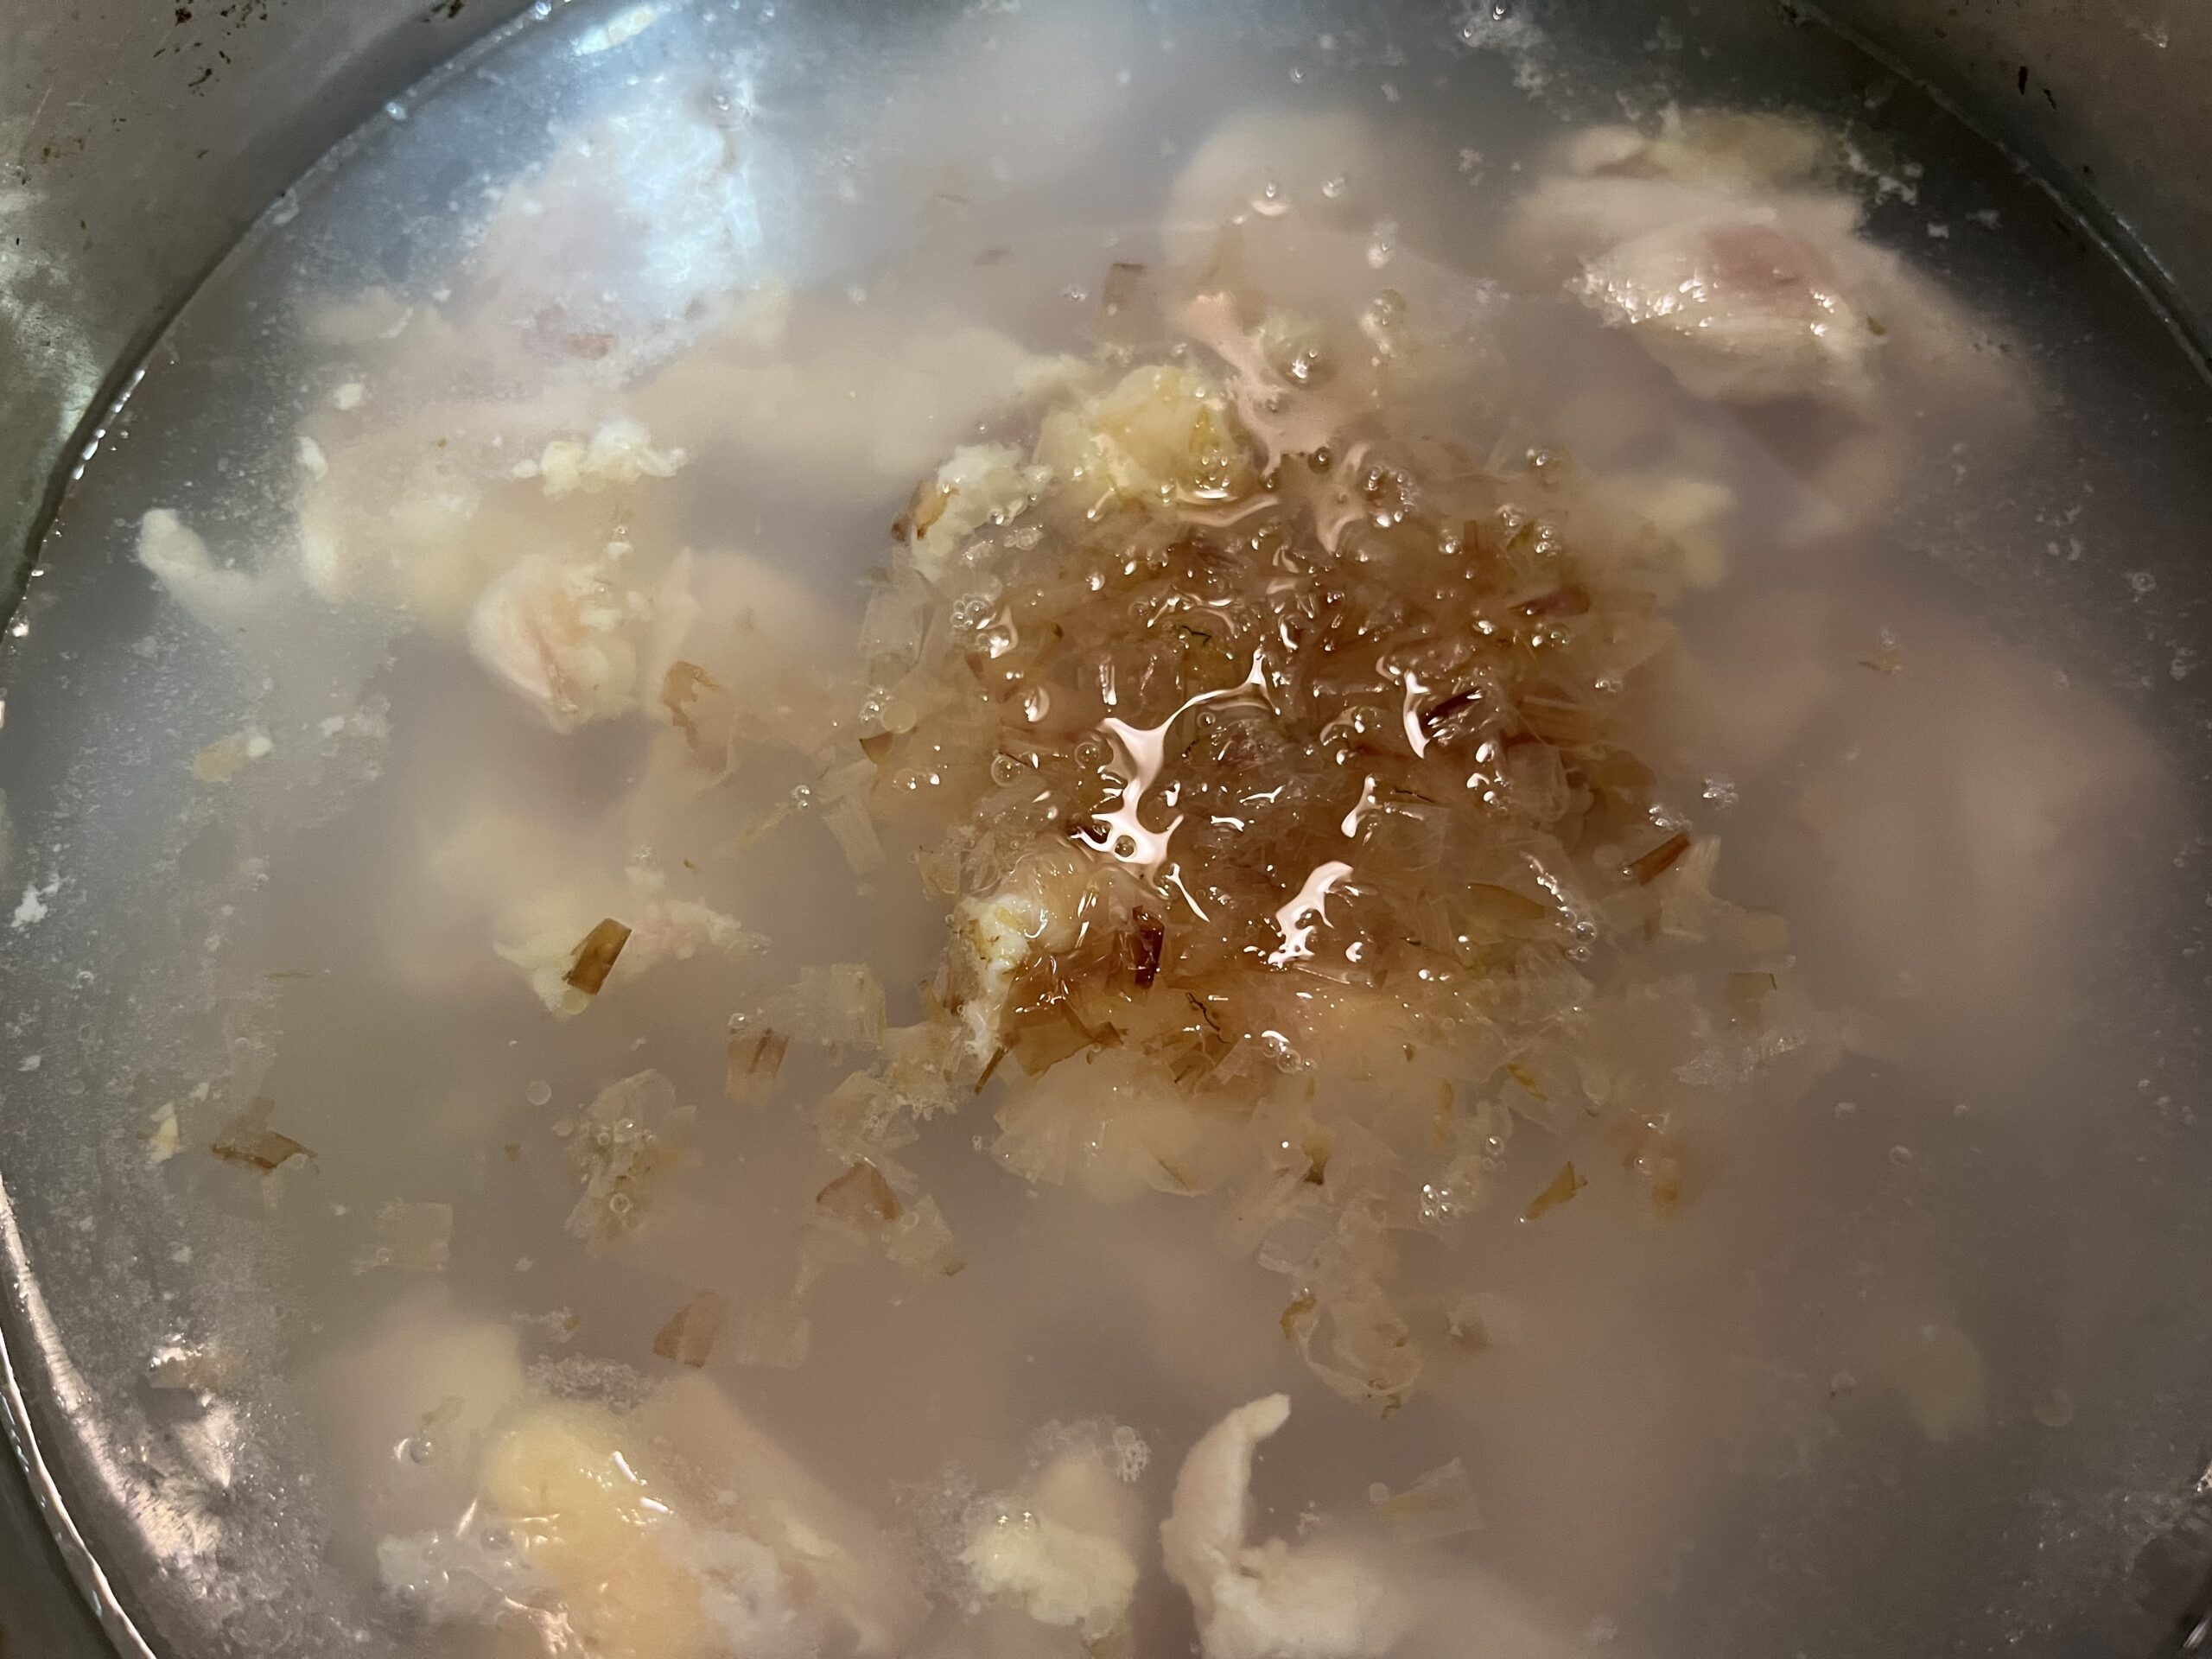 鶏モモ肉とかつお節を鍋で煮込む様子を撮影した写真